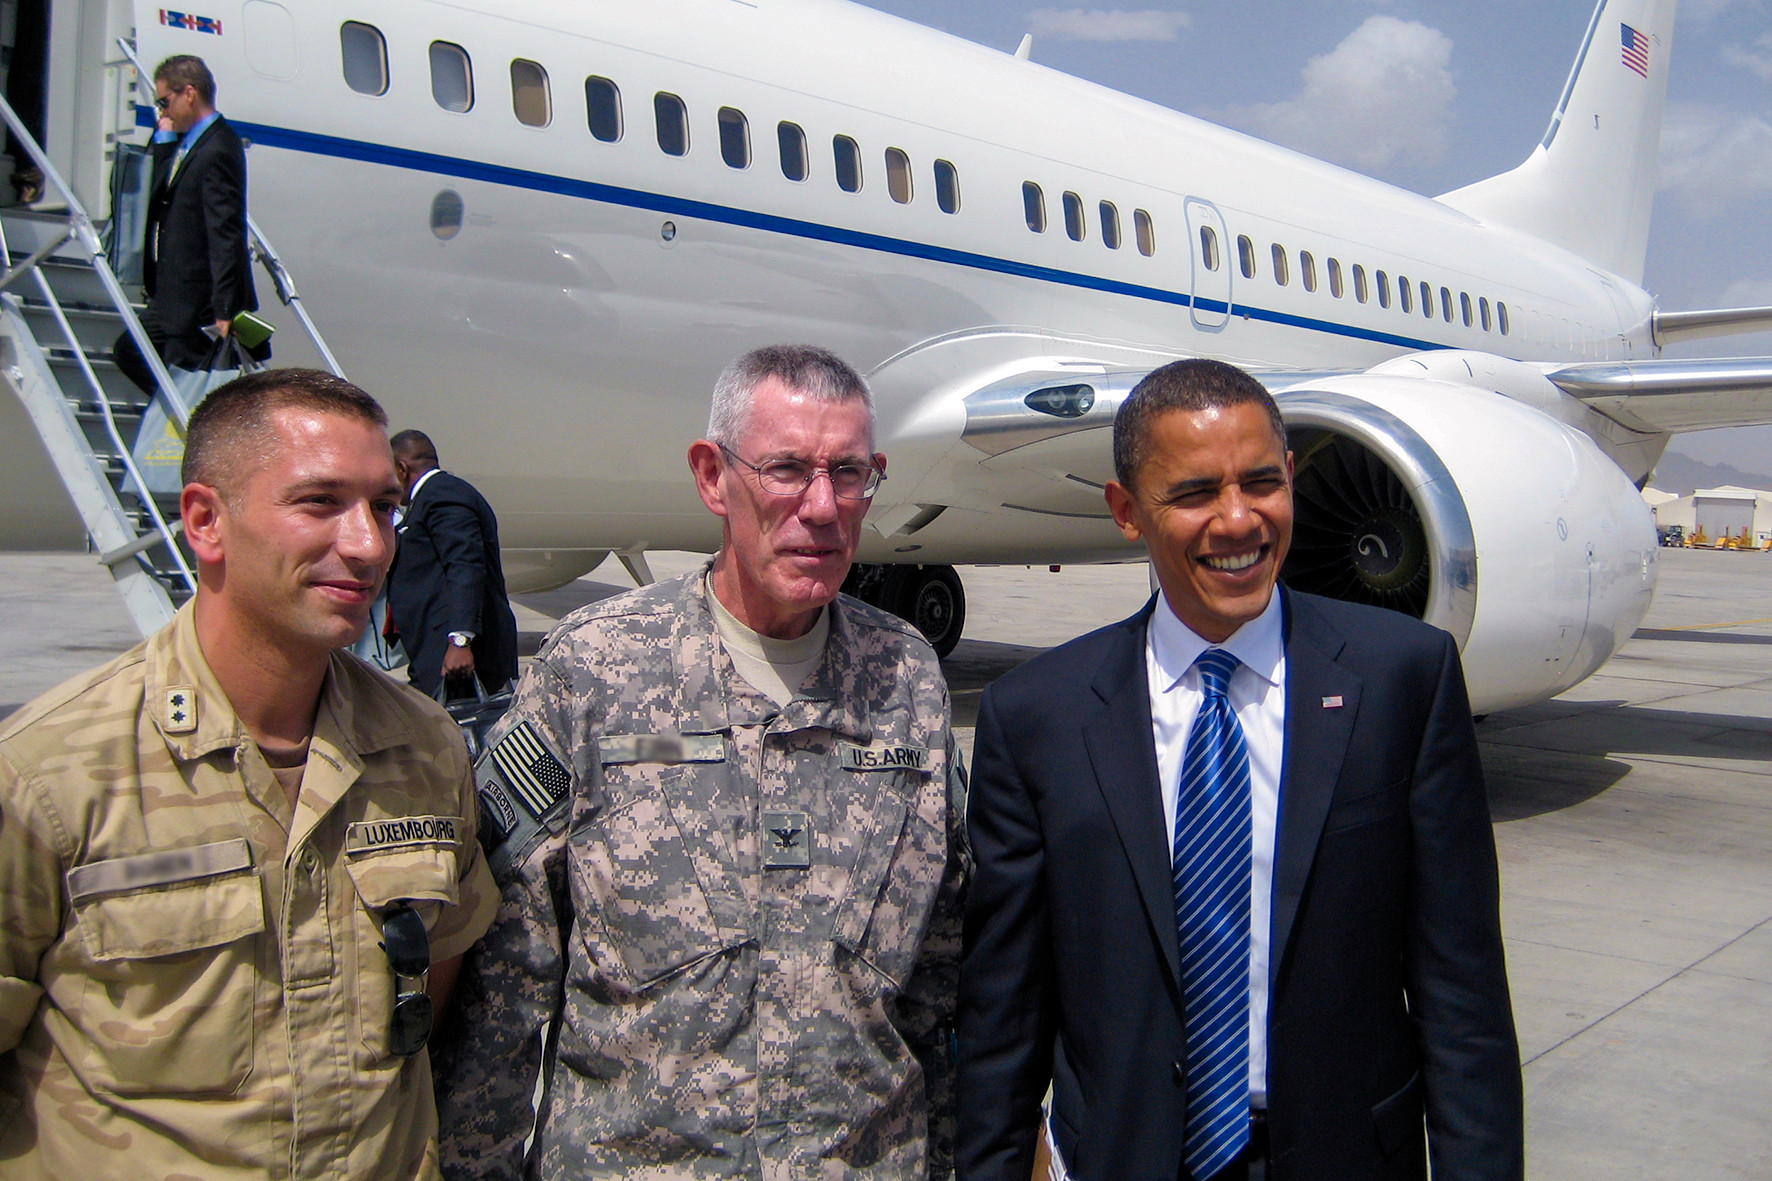 P47_ISAF_Afghanistan 2008 Visite de Barrack Obama a Kaboul-Edit.jpeg